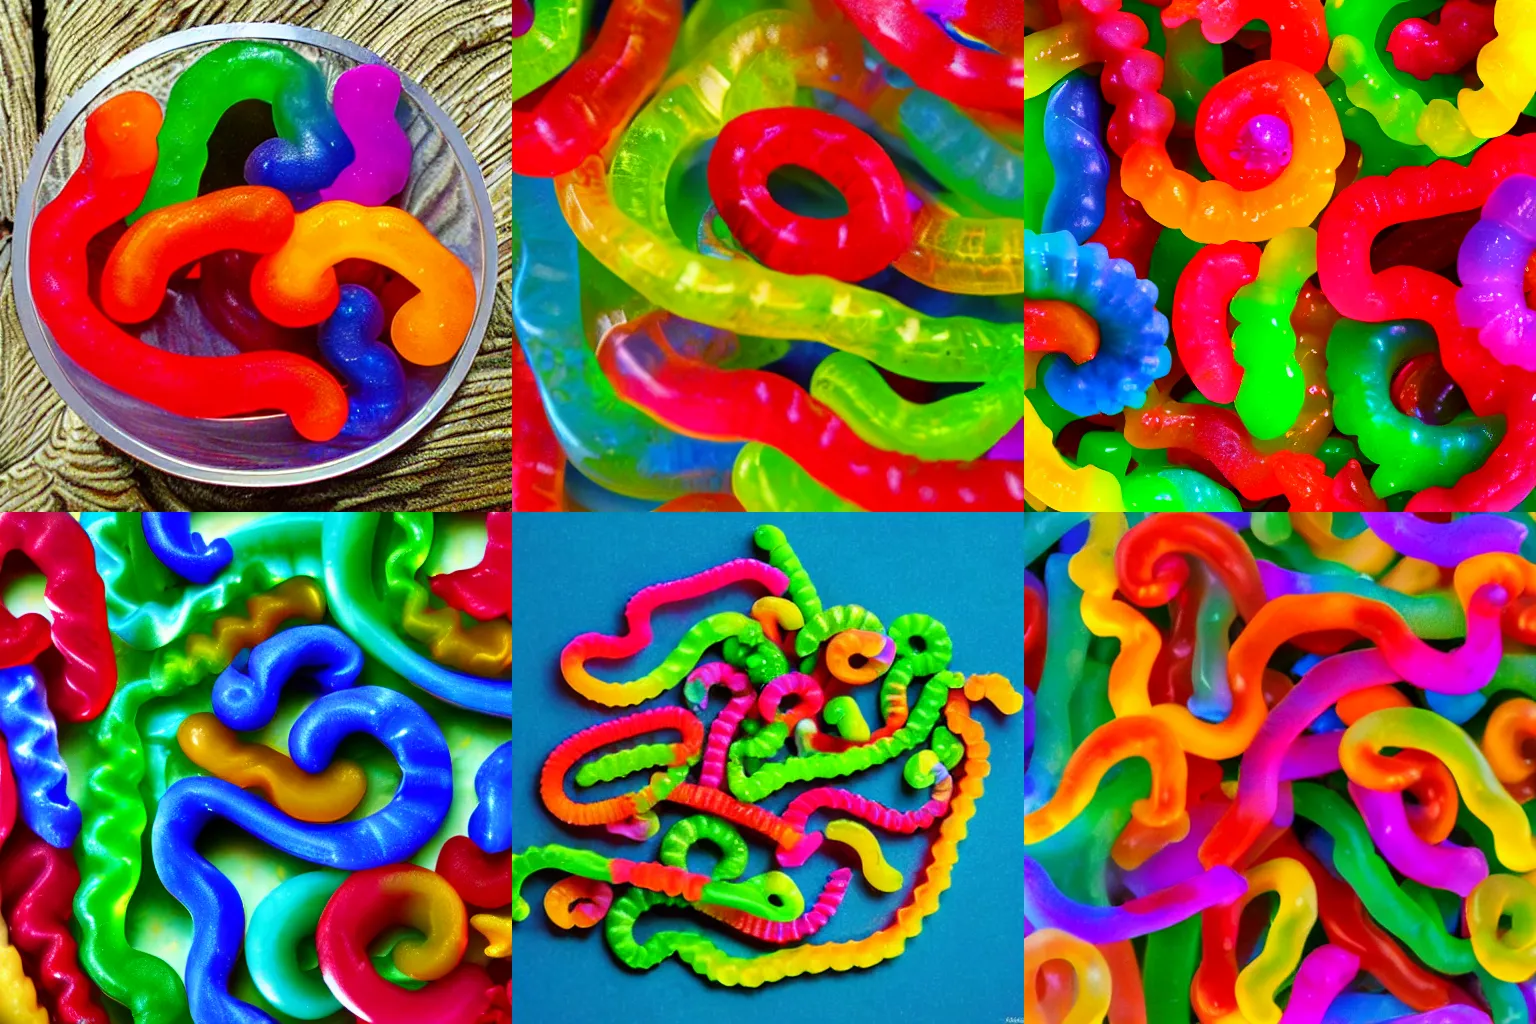 Prompt: fractals of gummi worms